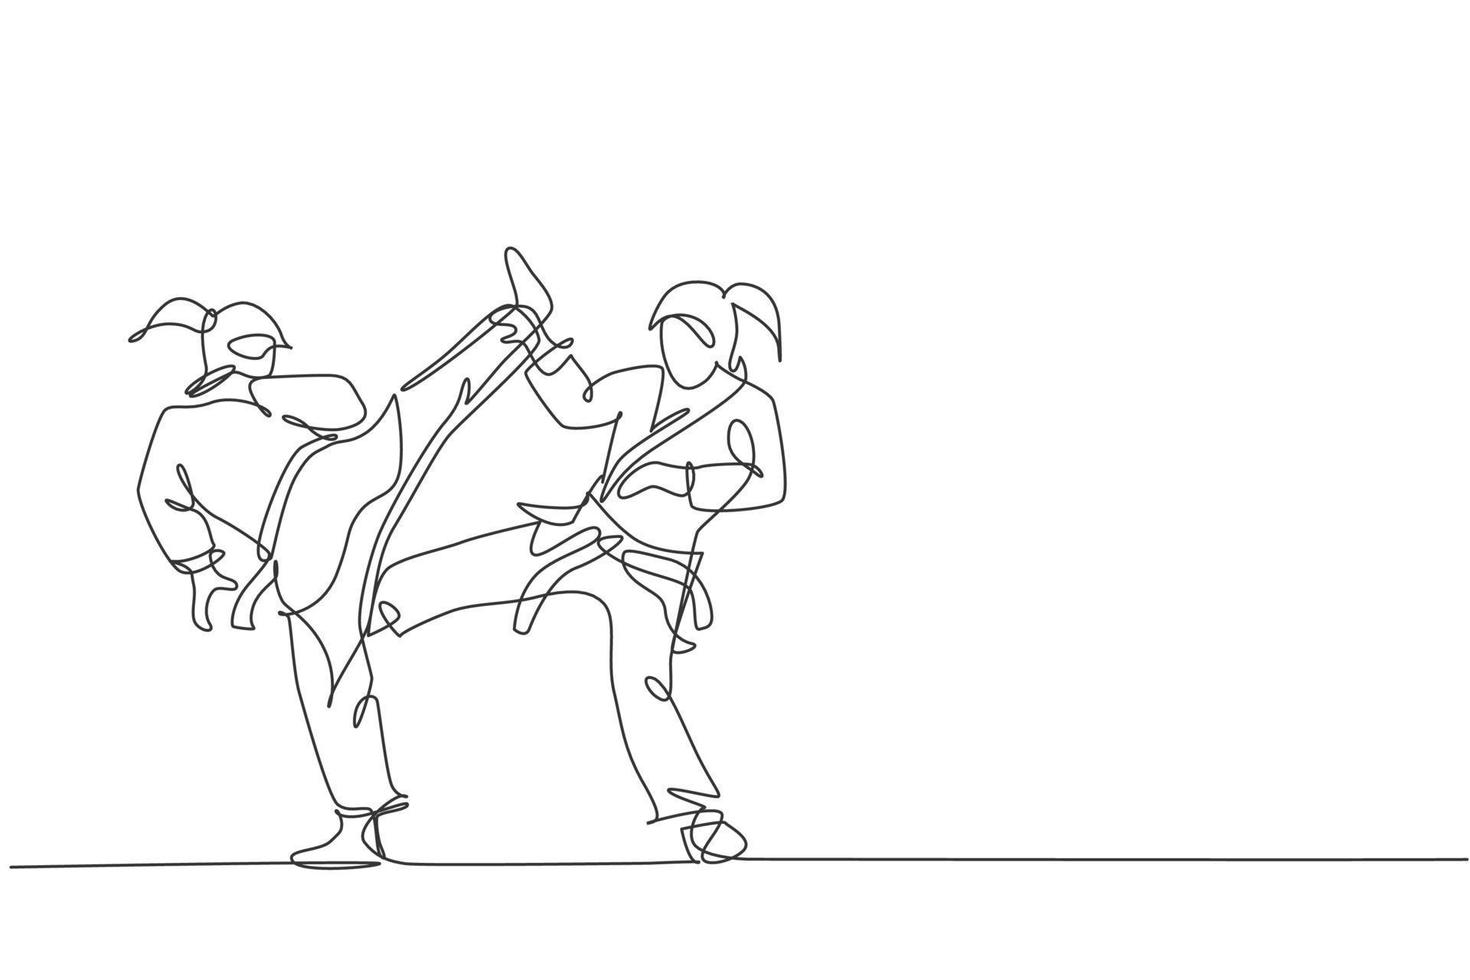 en kontinuerlig linjeteckning av två unga begåvade karateka-flickor som tränar poserar för duellstrider på dojo gym center. mästerskap kampsport sport koncept. dynamisk enda rad rita design vektorillustration vektor